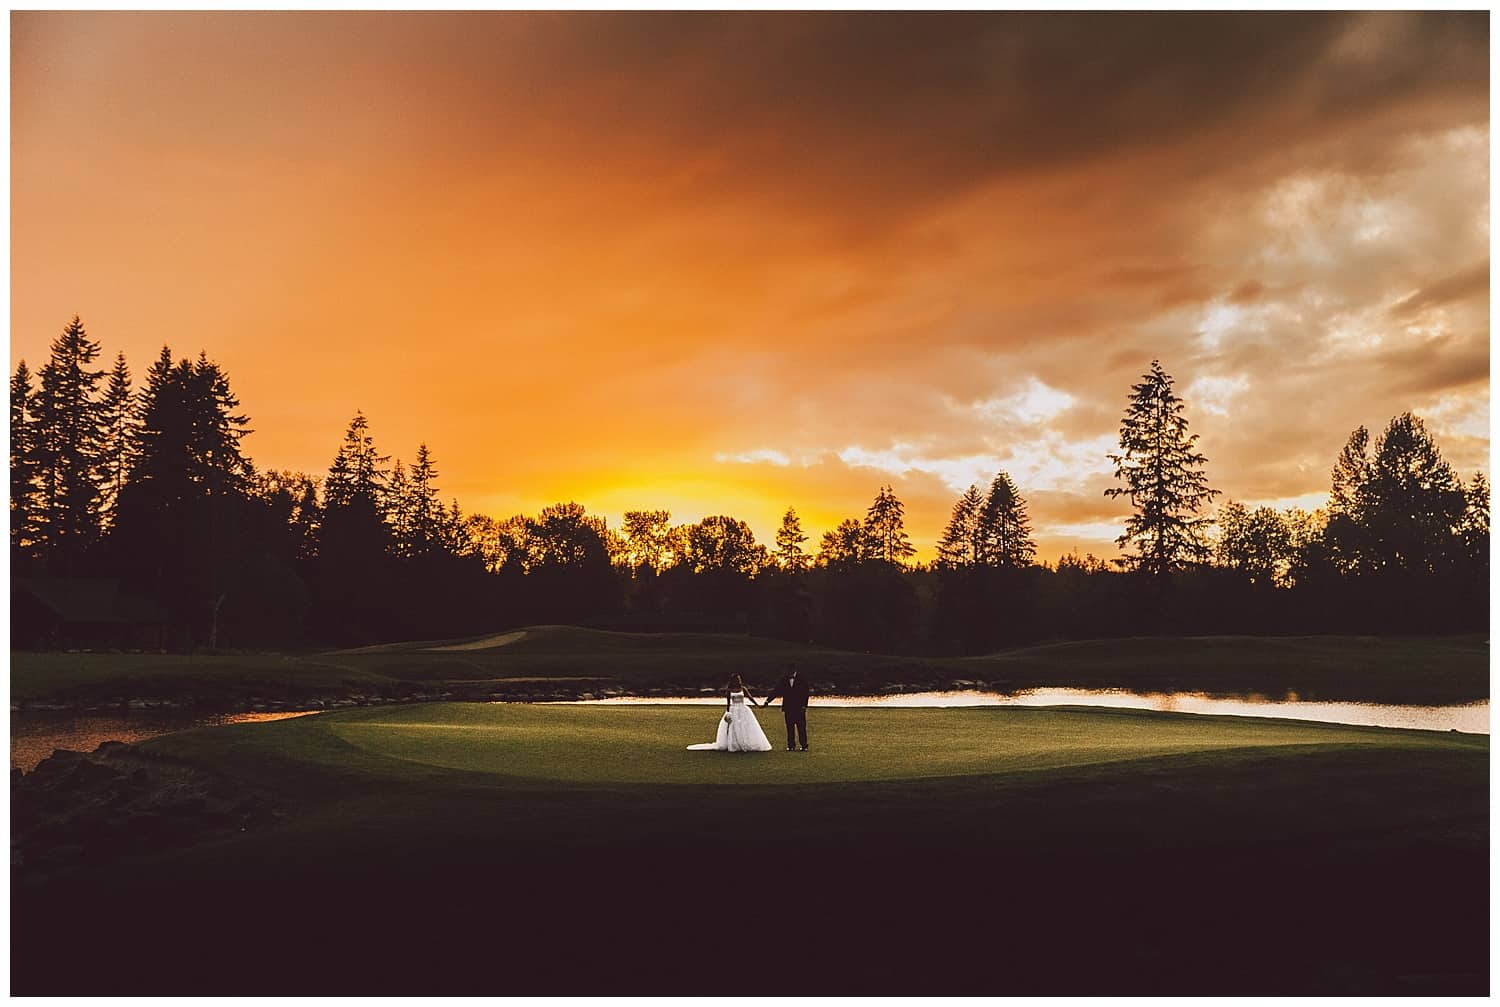 Echo Falls Golf Club wedding venue in Snohomish, WA by Kyle Goldie of Luma Weddings